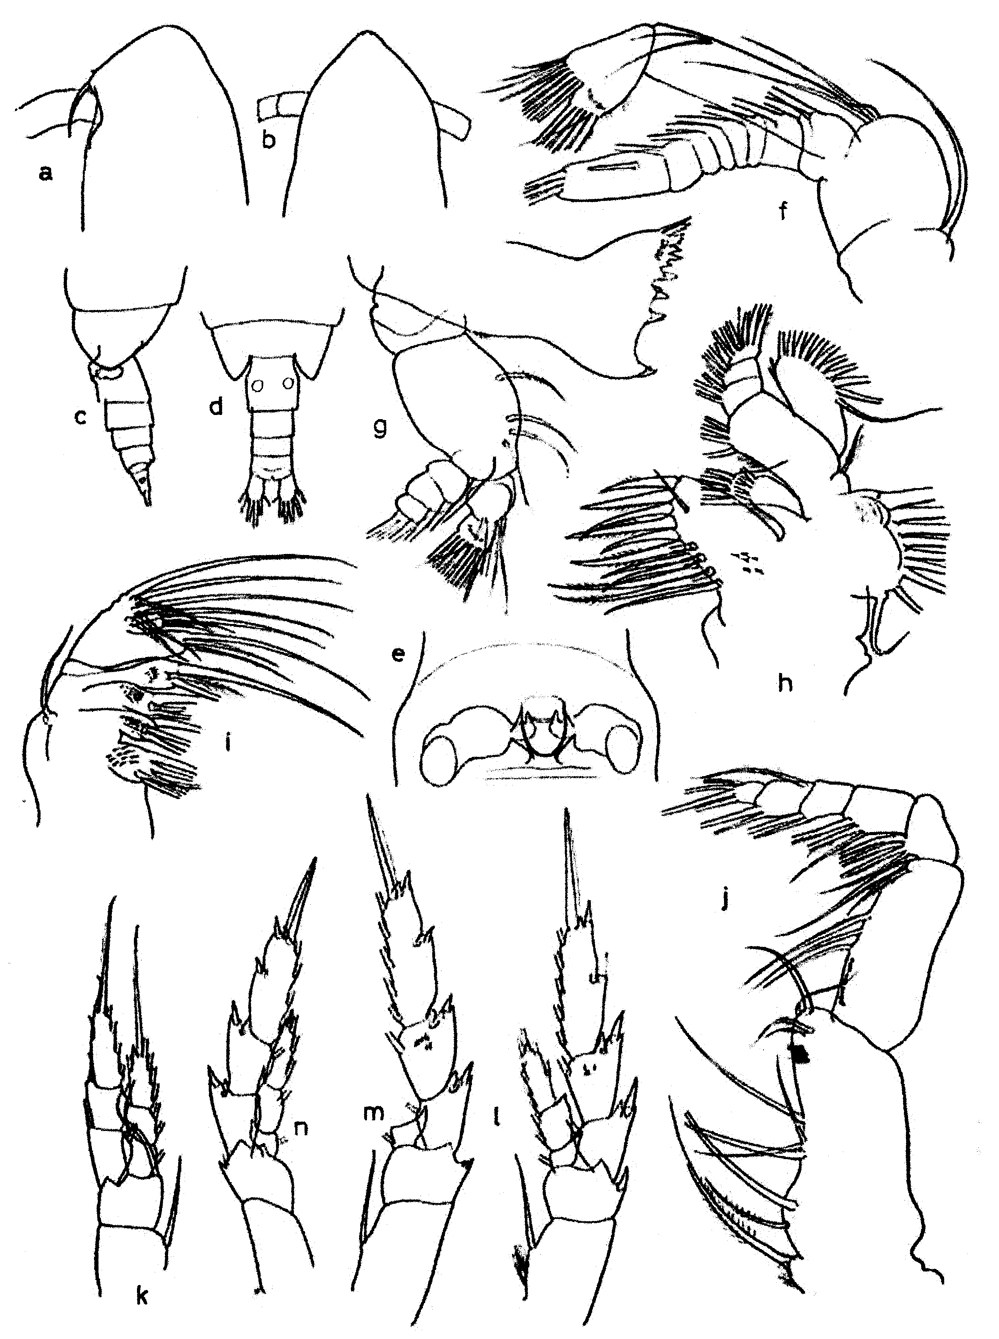 Espce Calanoides carinatus - Planche 7 de figures morphologiques